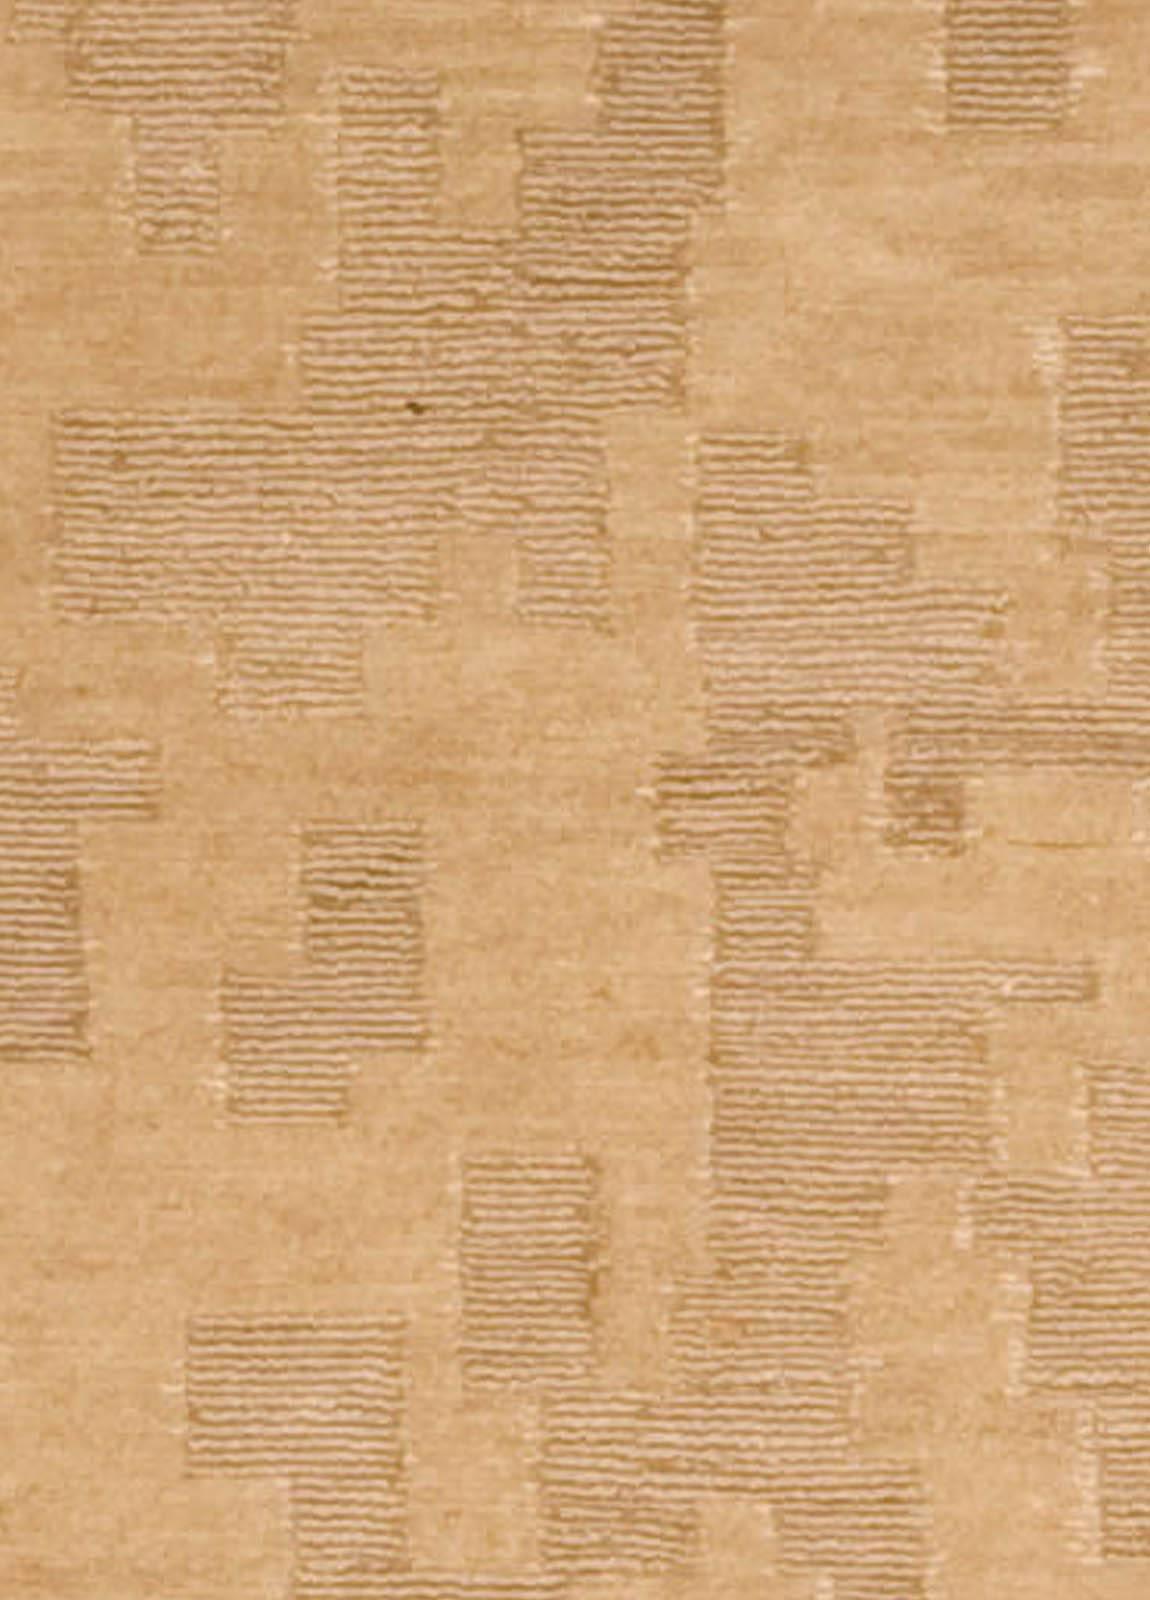 Doris Leslie Blau Kollektion 'AD4' goldbeige und brauner handgefertigter Teppich von Arthur Dunnam
Größe: 4'0